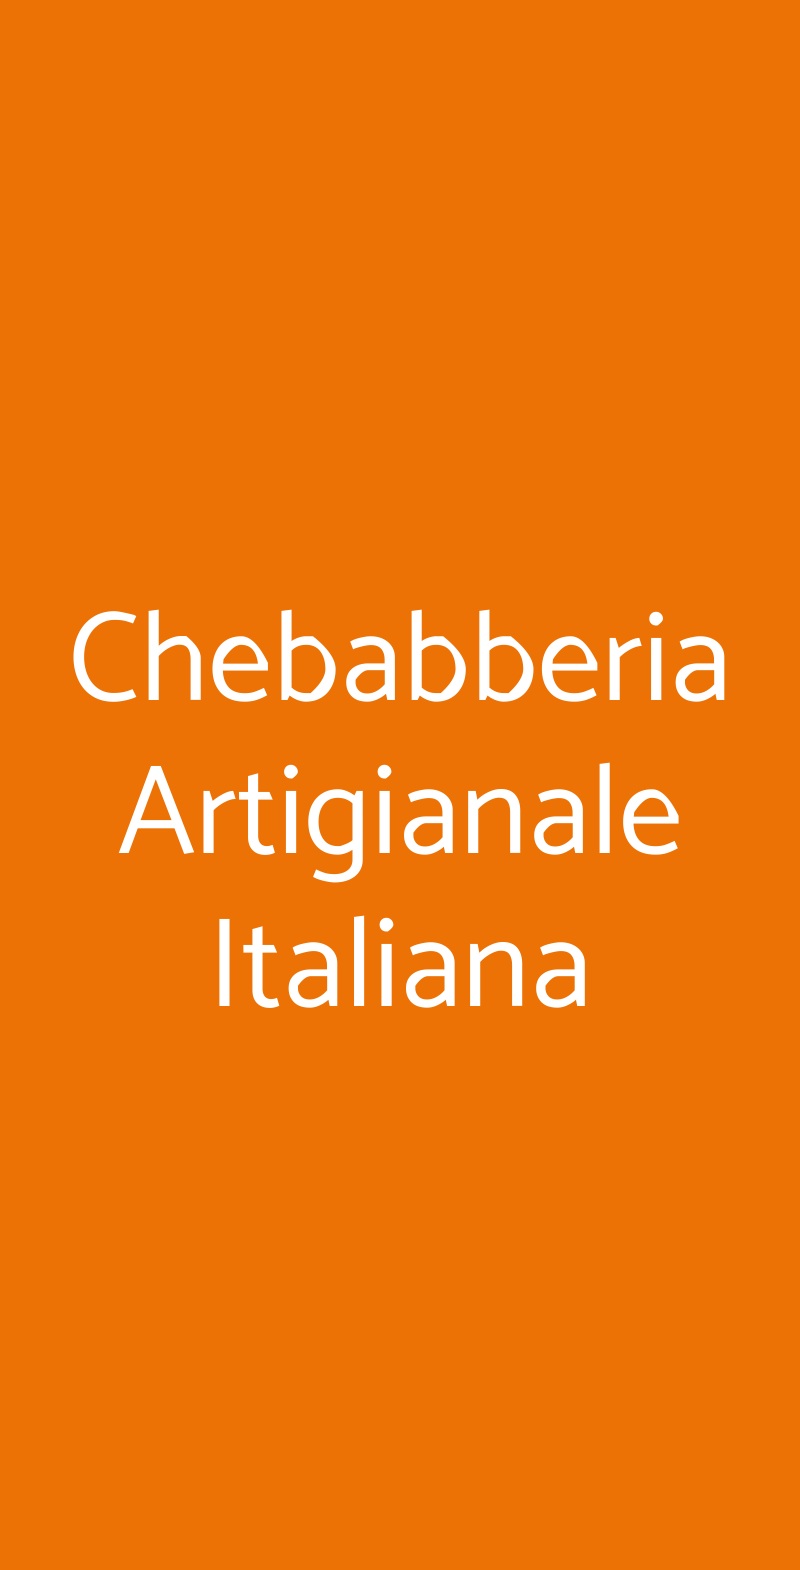 Chebabberia Artigianale Italiana Livorno menù 1 pagina